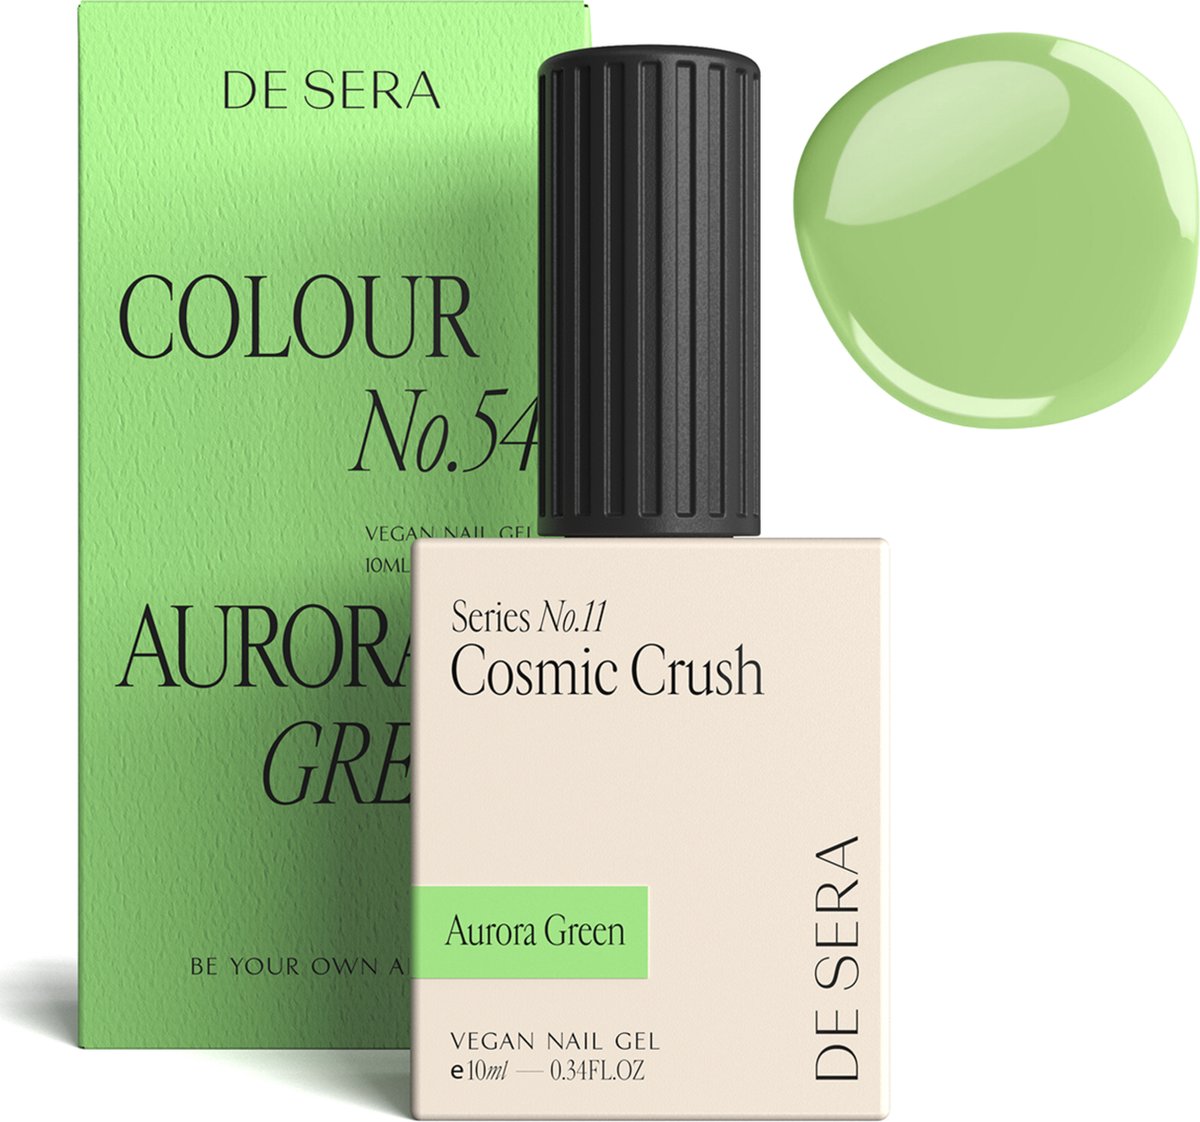 De Sera Gellak - Groene Gel Nagellak - Groen - 10ML - Colour No. 54 Aurora Green